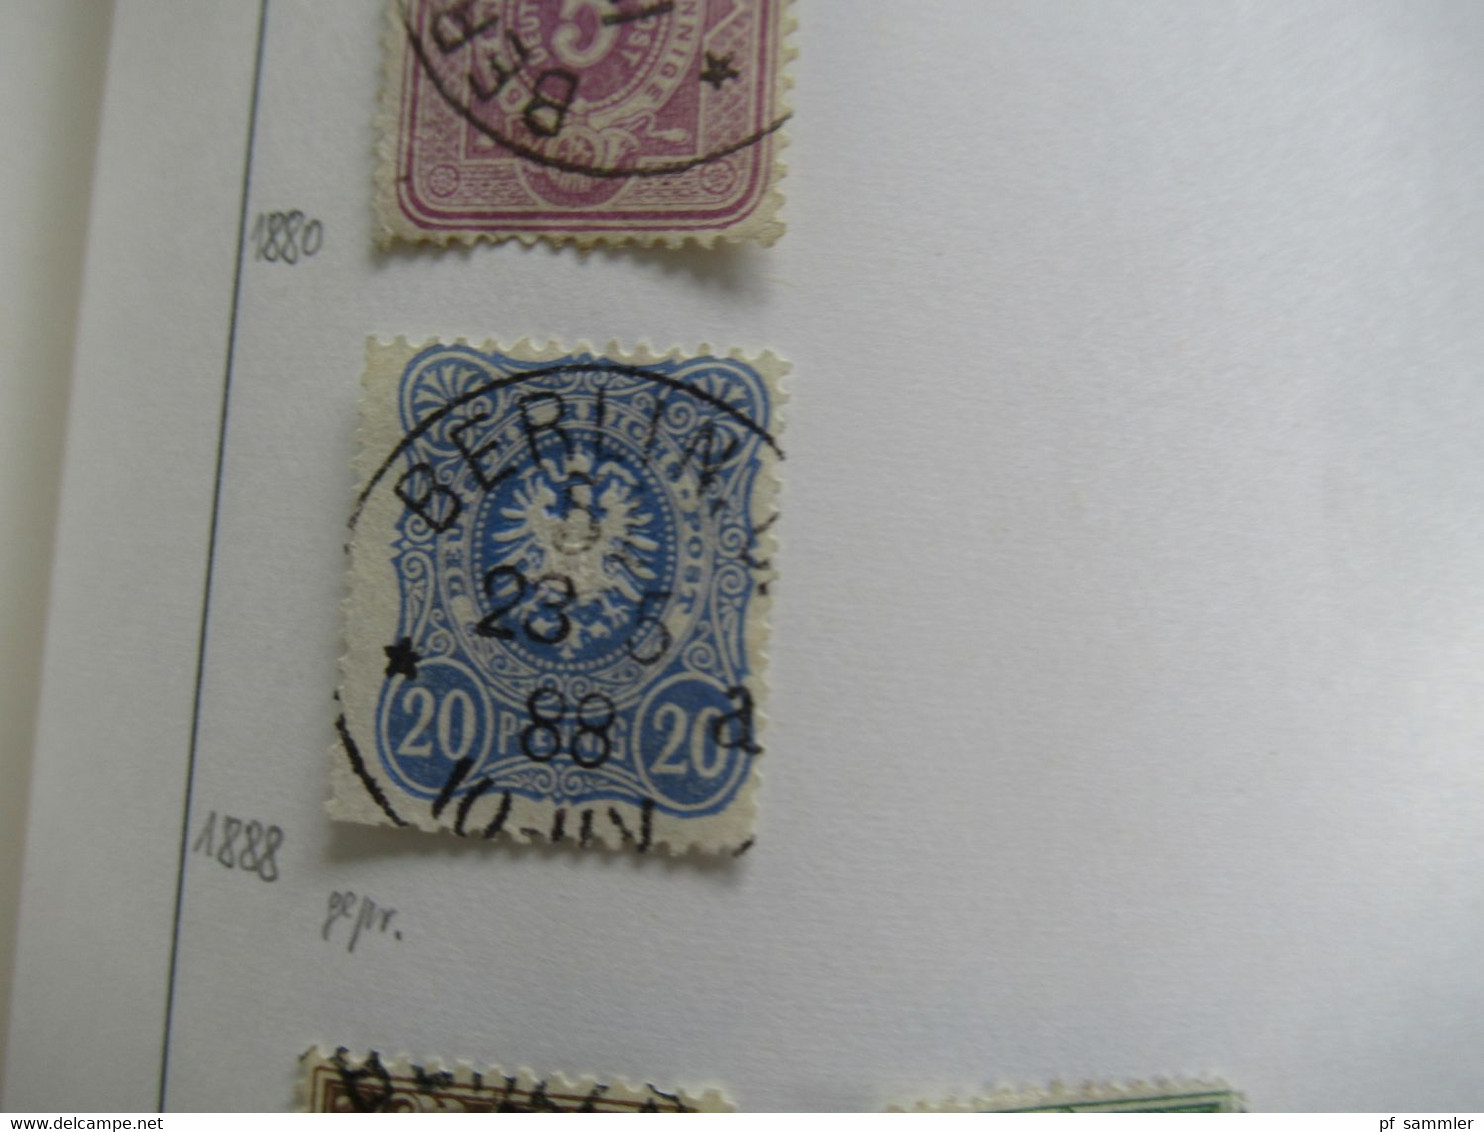 Spezial Slg. Berliner Postämter 31 - 54 / Stempelsammlung ab Brustschild mit tollen Stücken! Auch Einheiten Pfennig usw.